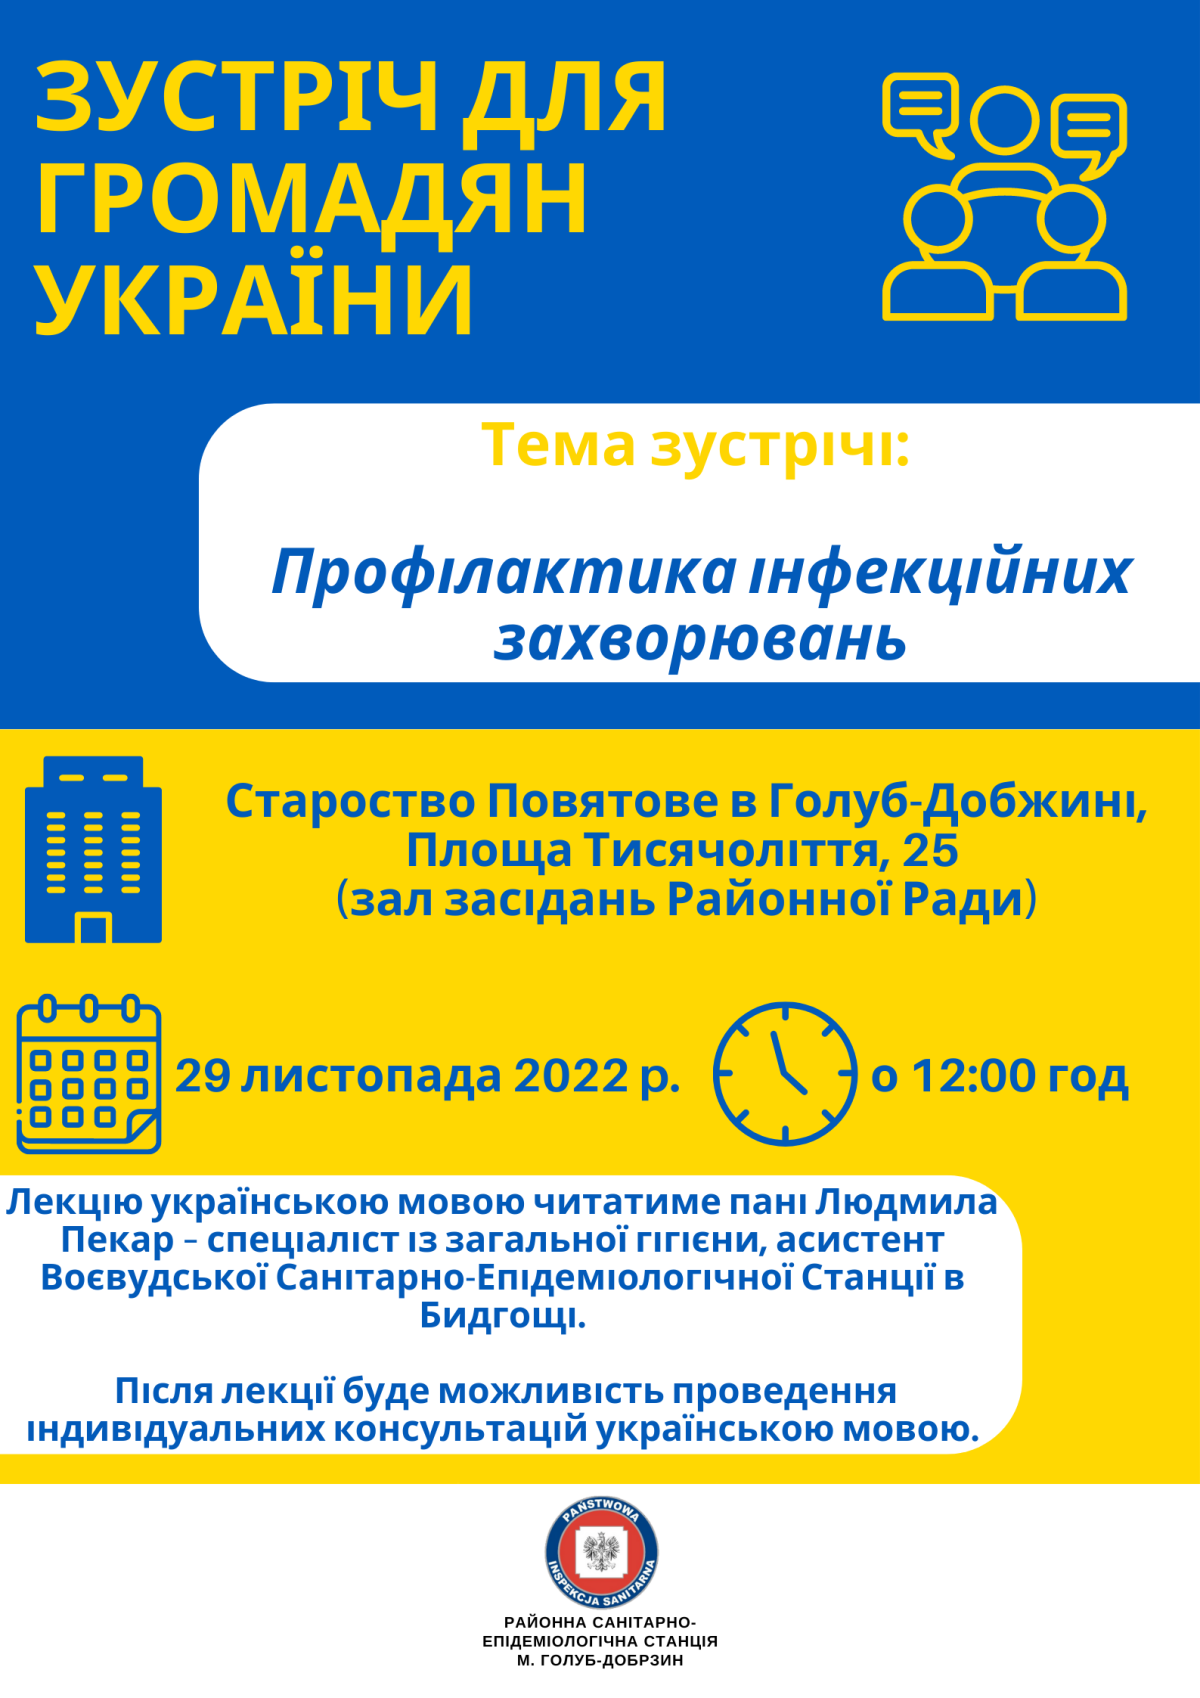 Spotkanie dla obywateli Ukrainy